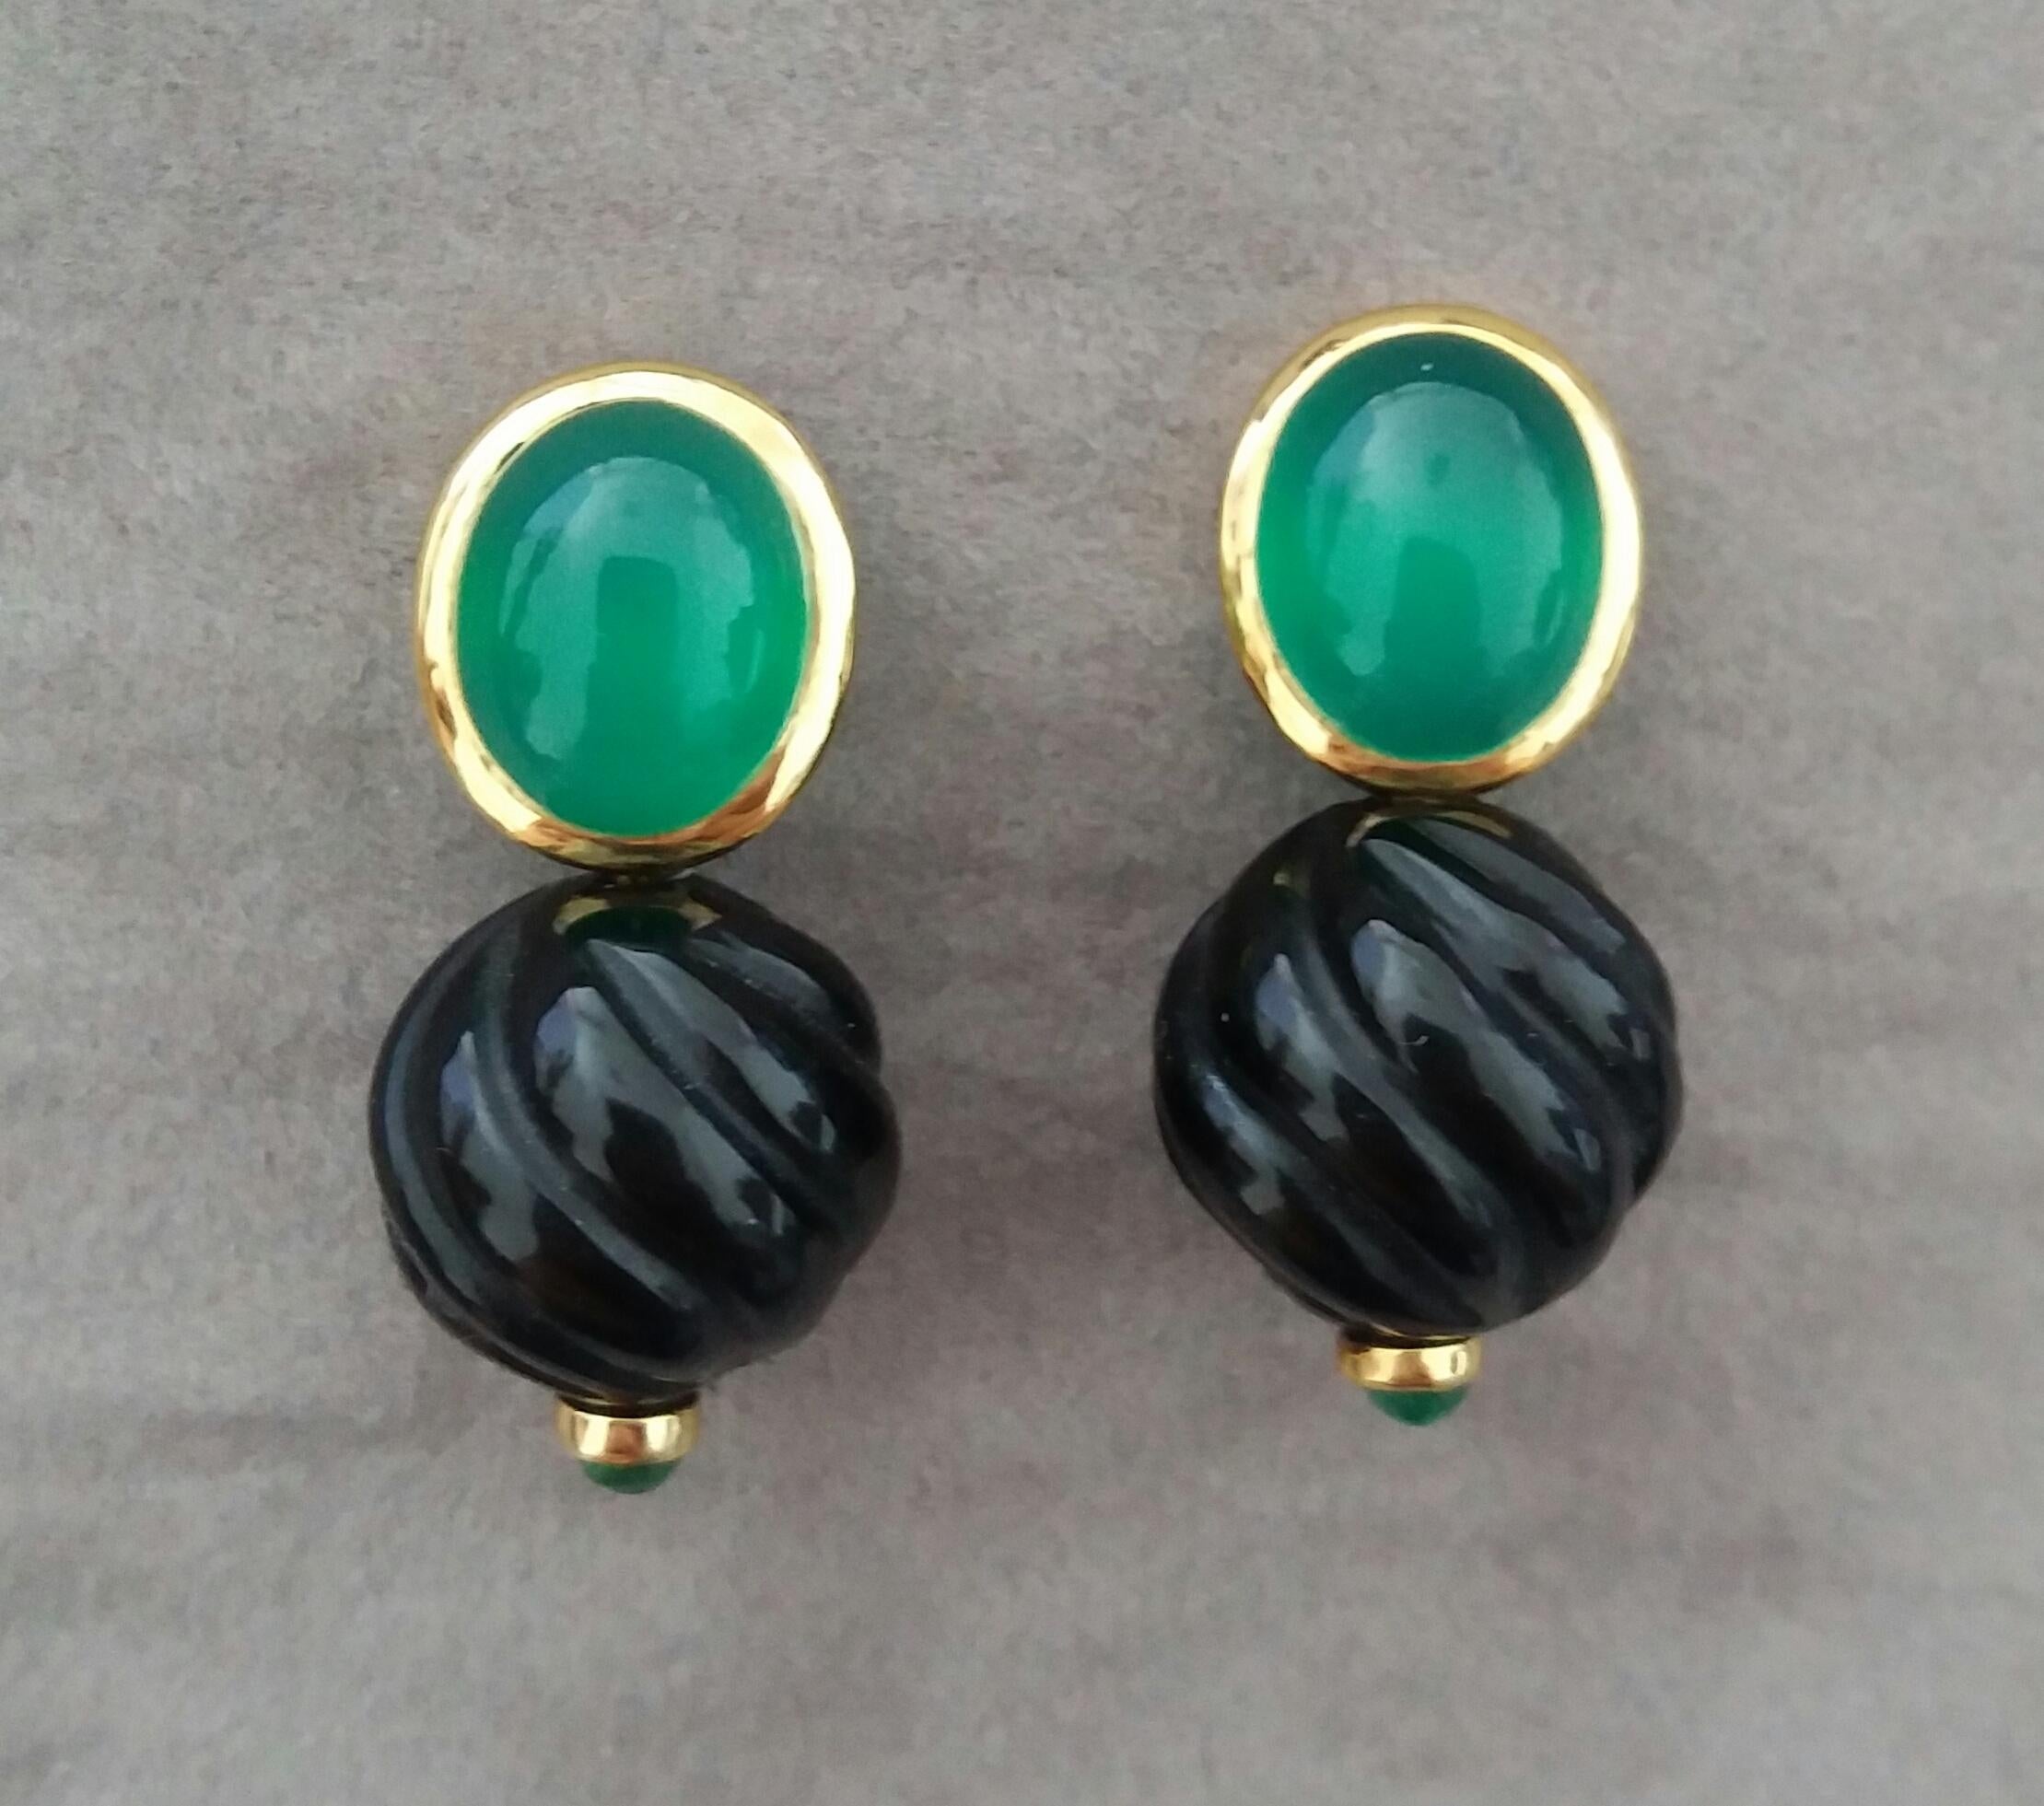 Diese einzigartigen und einfachen, aber eleganten Ohrringe sind komplett handgefertigt und kombiniert die Black Onix runden geschnitzten Perlen von 13 mm Durchmesser mit kleinen Smaragden Kabinen auf der Unterseite zu einem Paar von Oval Green Onyx